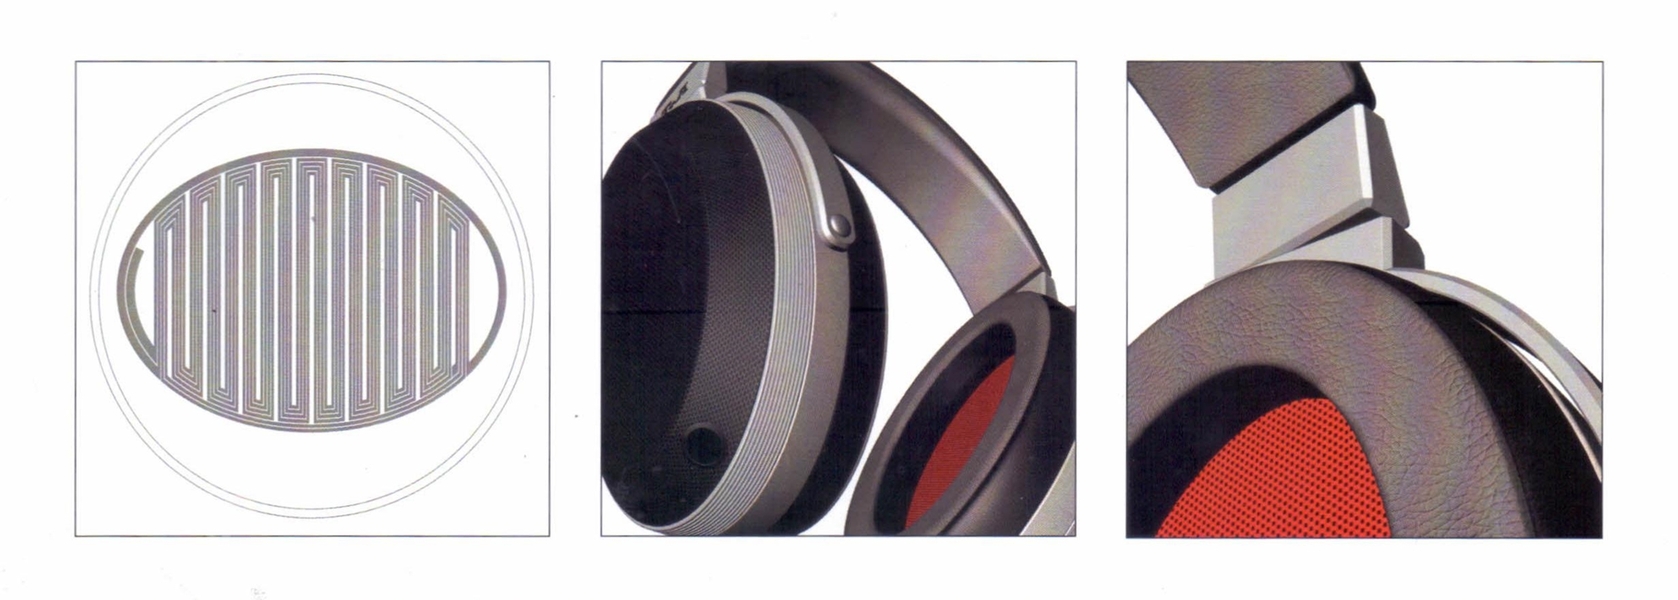 T+A tiết lộ về mẫu tai nghe đầu tiên của hãng mang tên Solitaire P